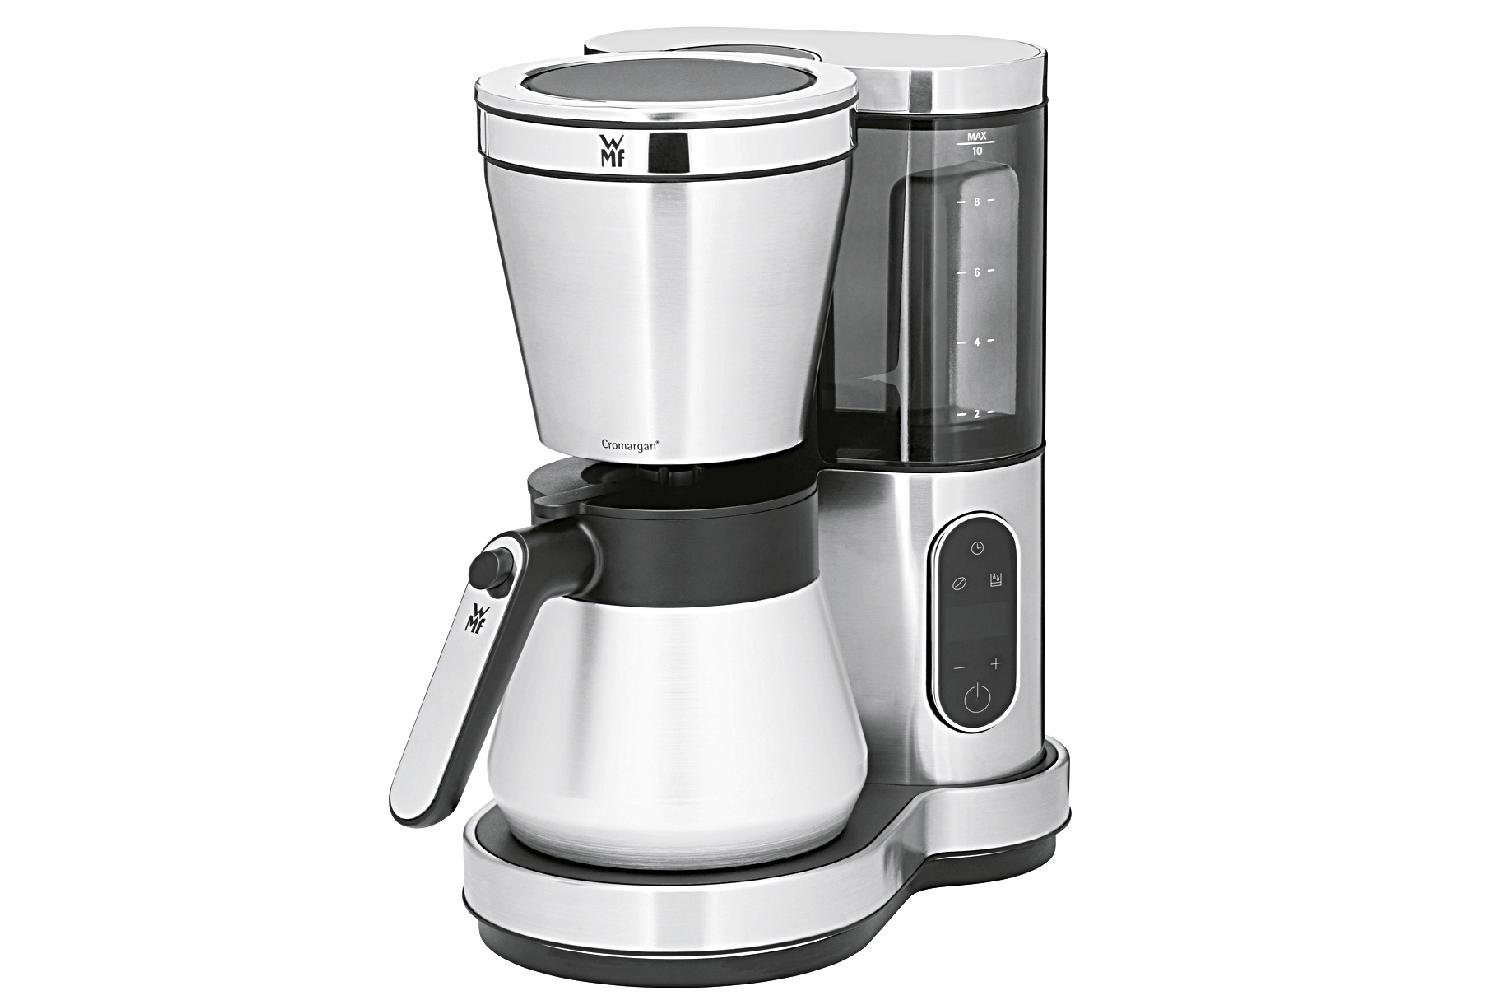 Lumero Kaffeemaschine Thermo  8 Tassen (à 125 ml) Kaffeemaschine mit Thermokanne hohe Brühtemperatur von bis zu 95°C,